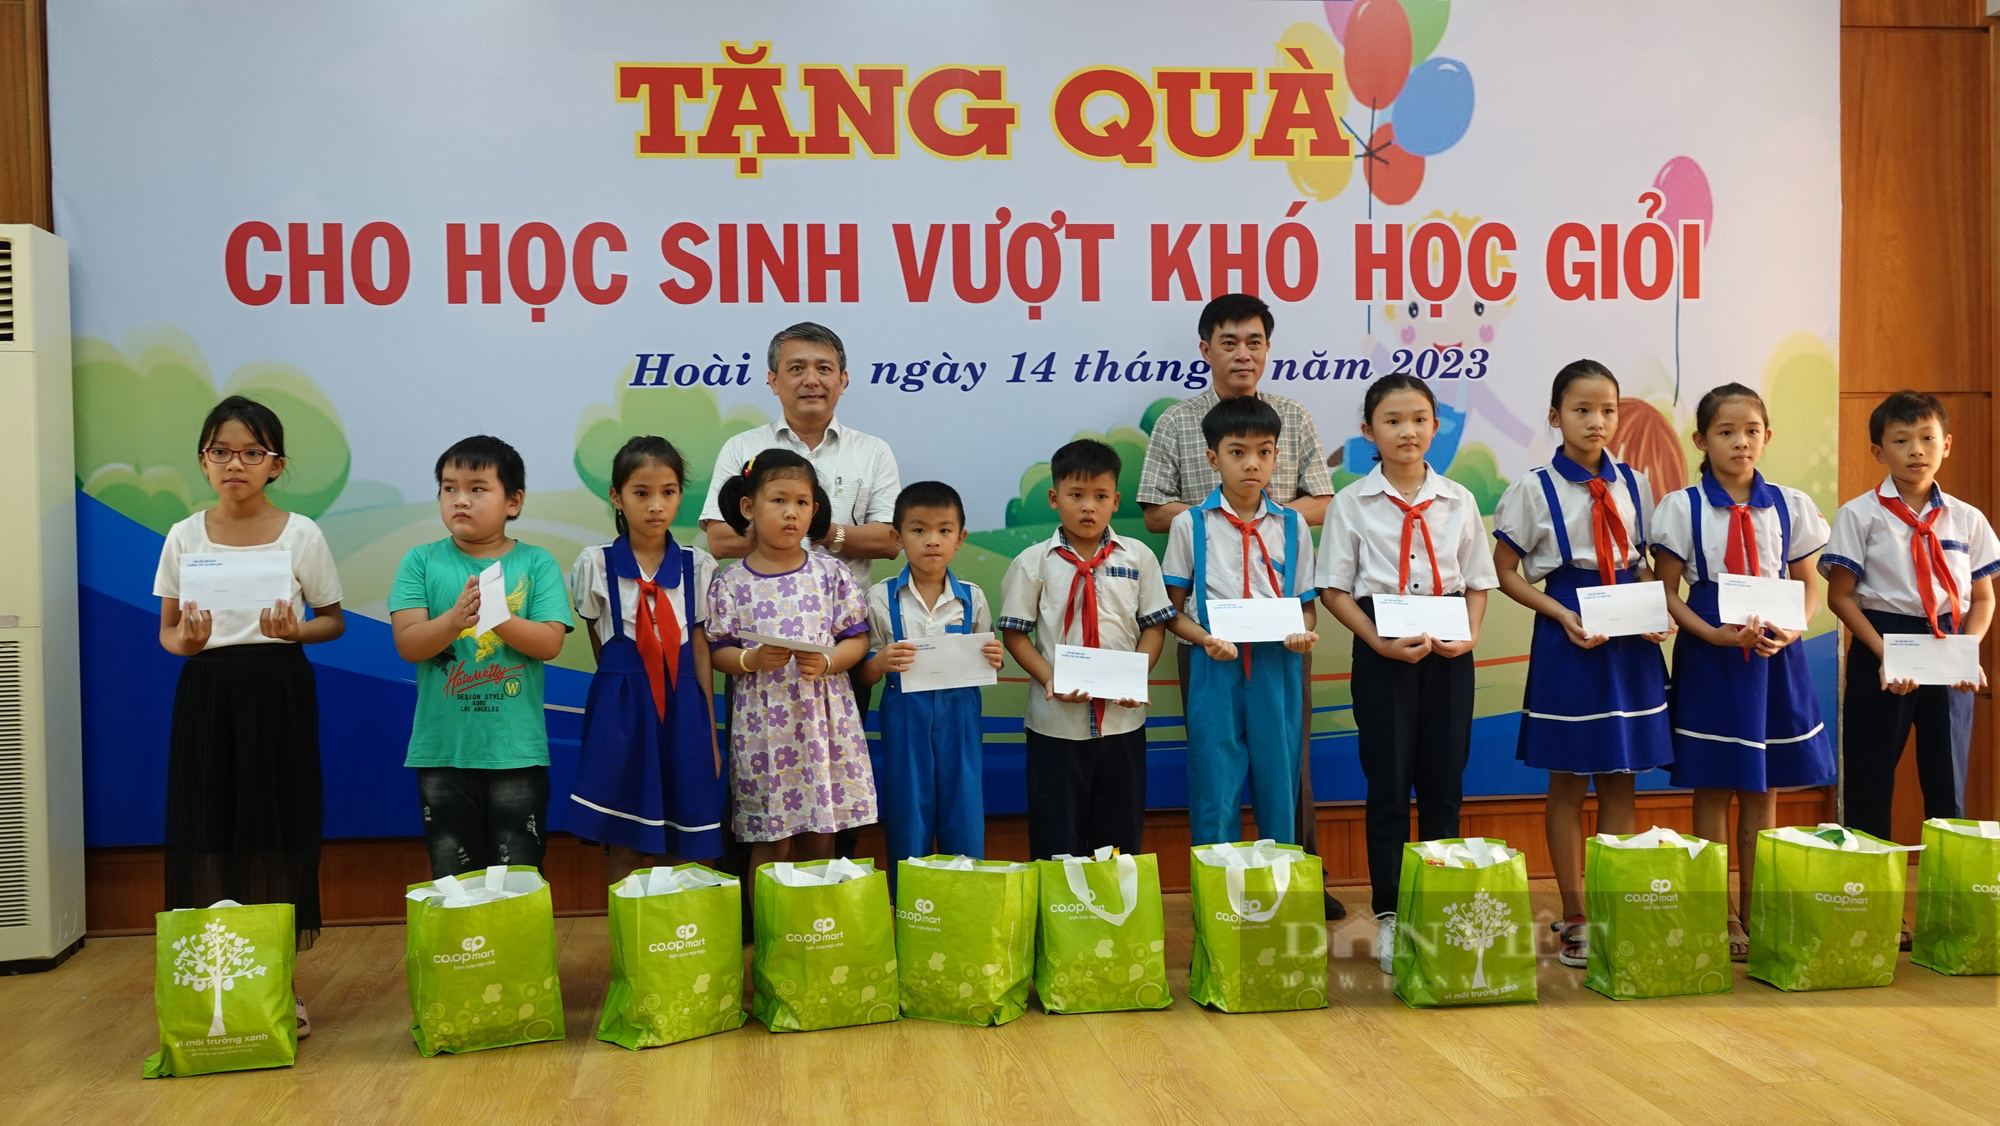 Học sinh vượt khó học giỏi tại Bình Định nhận quà từ nhà báo - Ảnh 2.